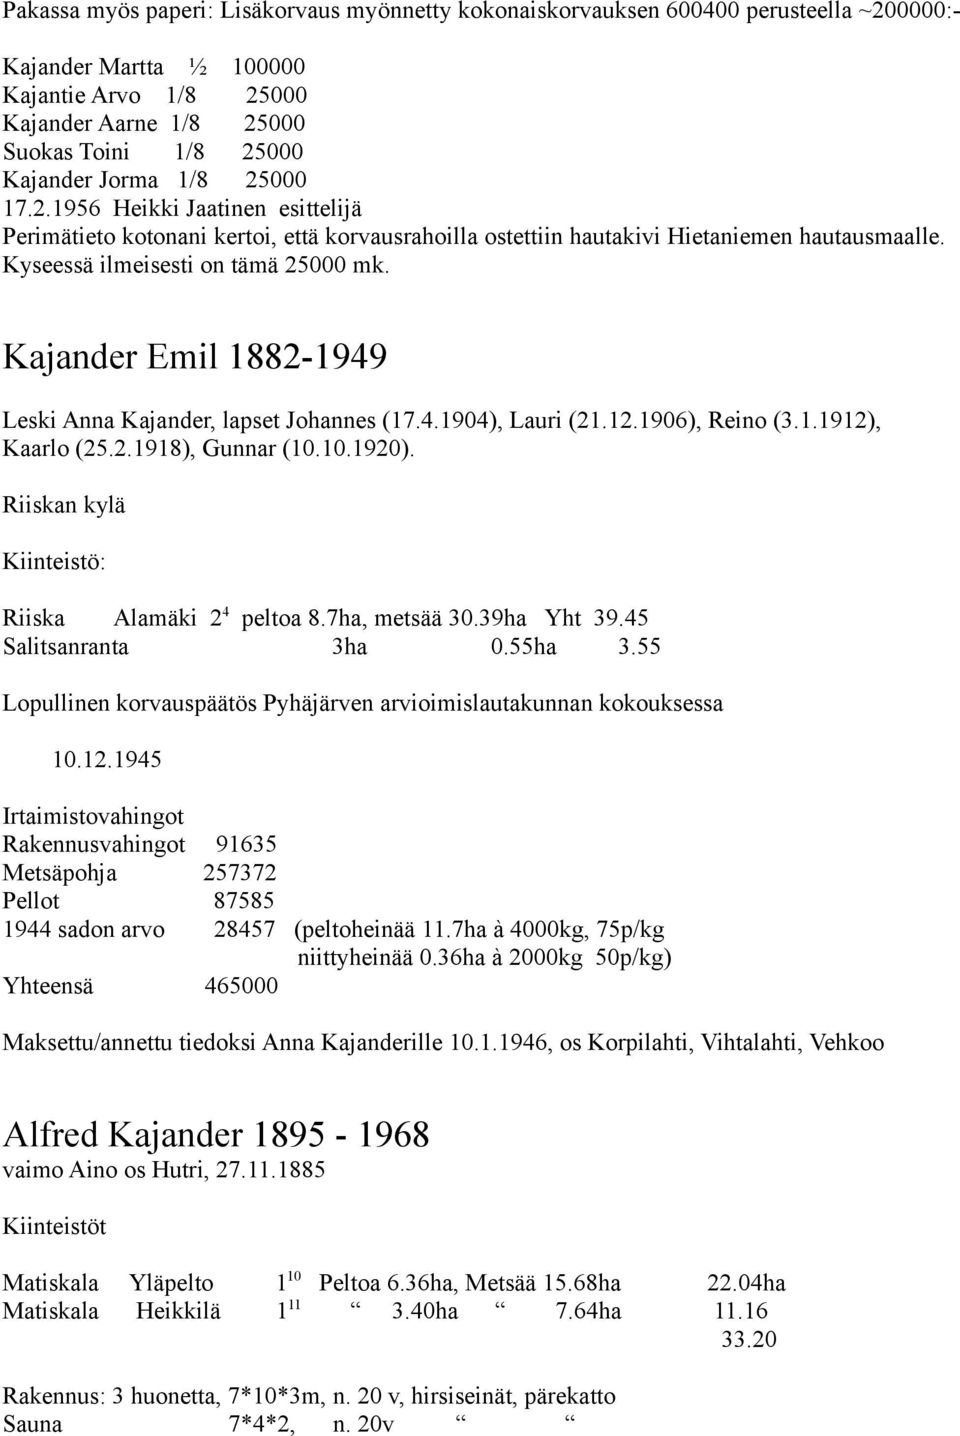 Kajander Emil 1882-1949 Leski Anna Kajander, lapset Johannes (17.4.1904), Lauri (21.12.1906), Reino (3.1.1912), Kaarlo (25.2.1918), Gunnar (10.10.1920).